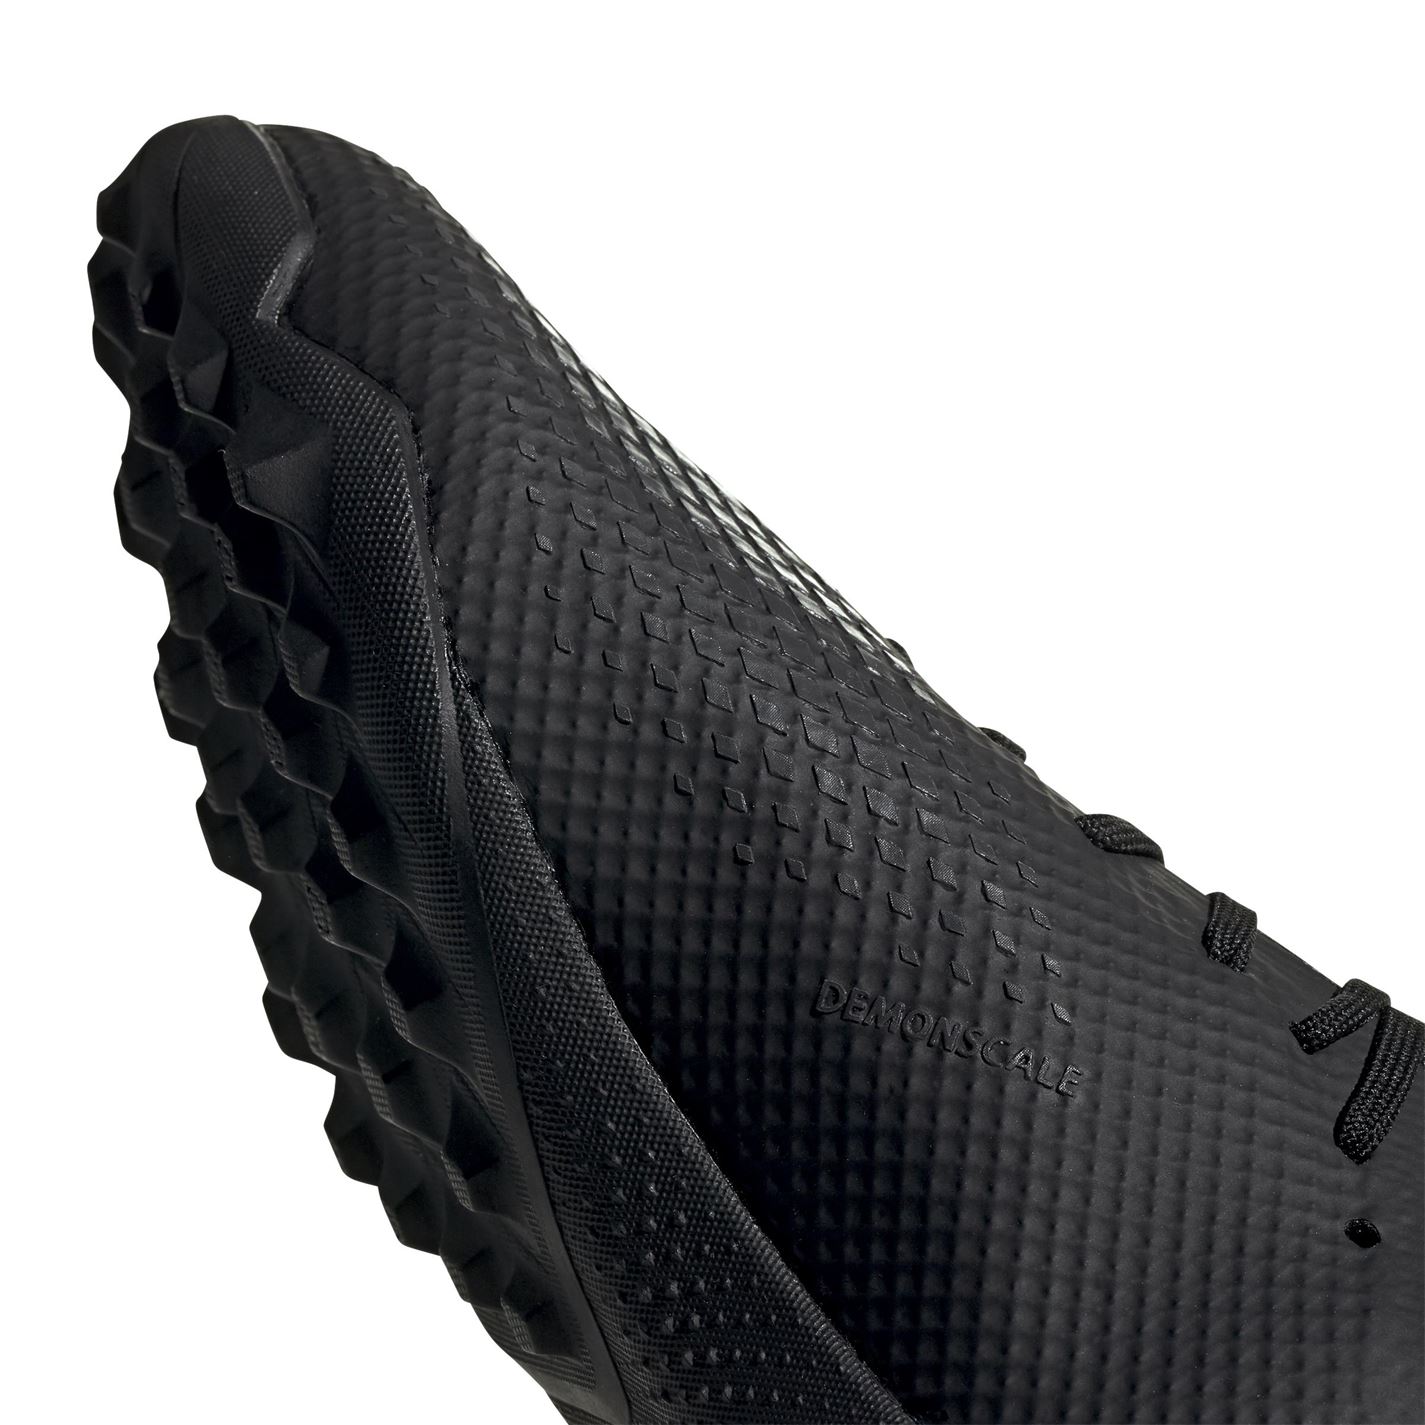 Adidasi Gazon Sintetic Adidasi Fotbal adidas Predator 20.3 negru